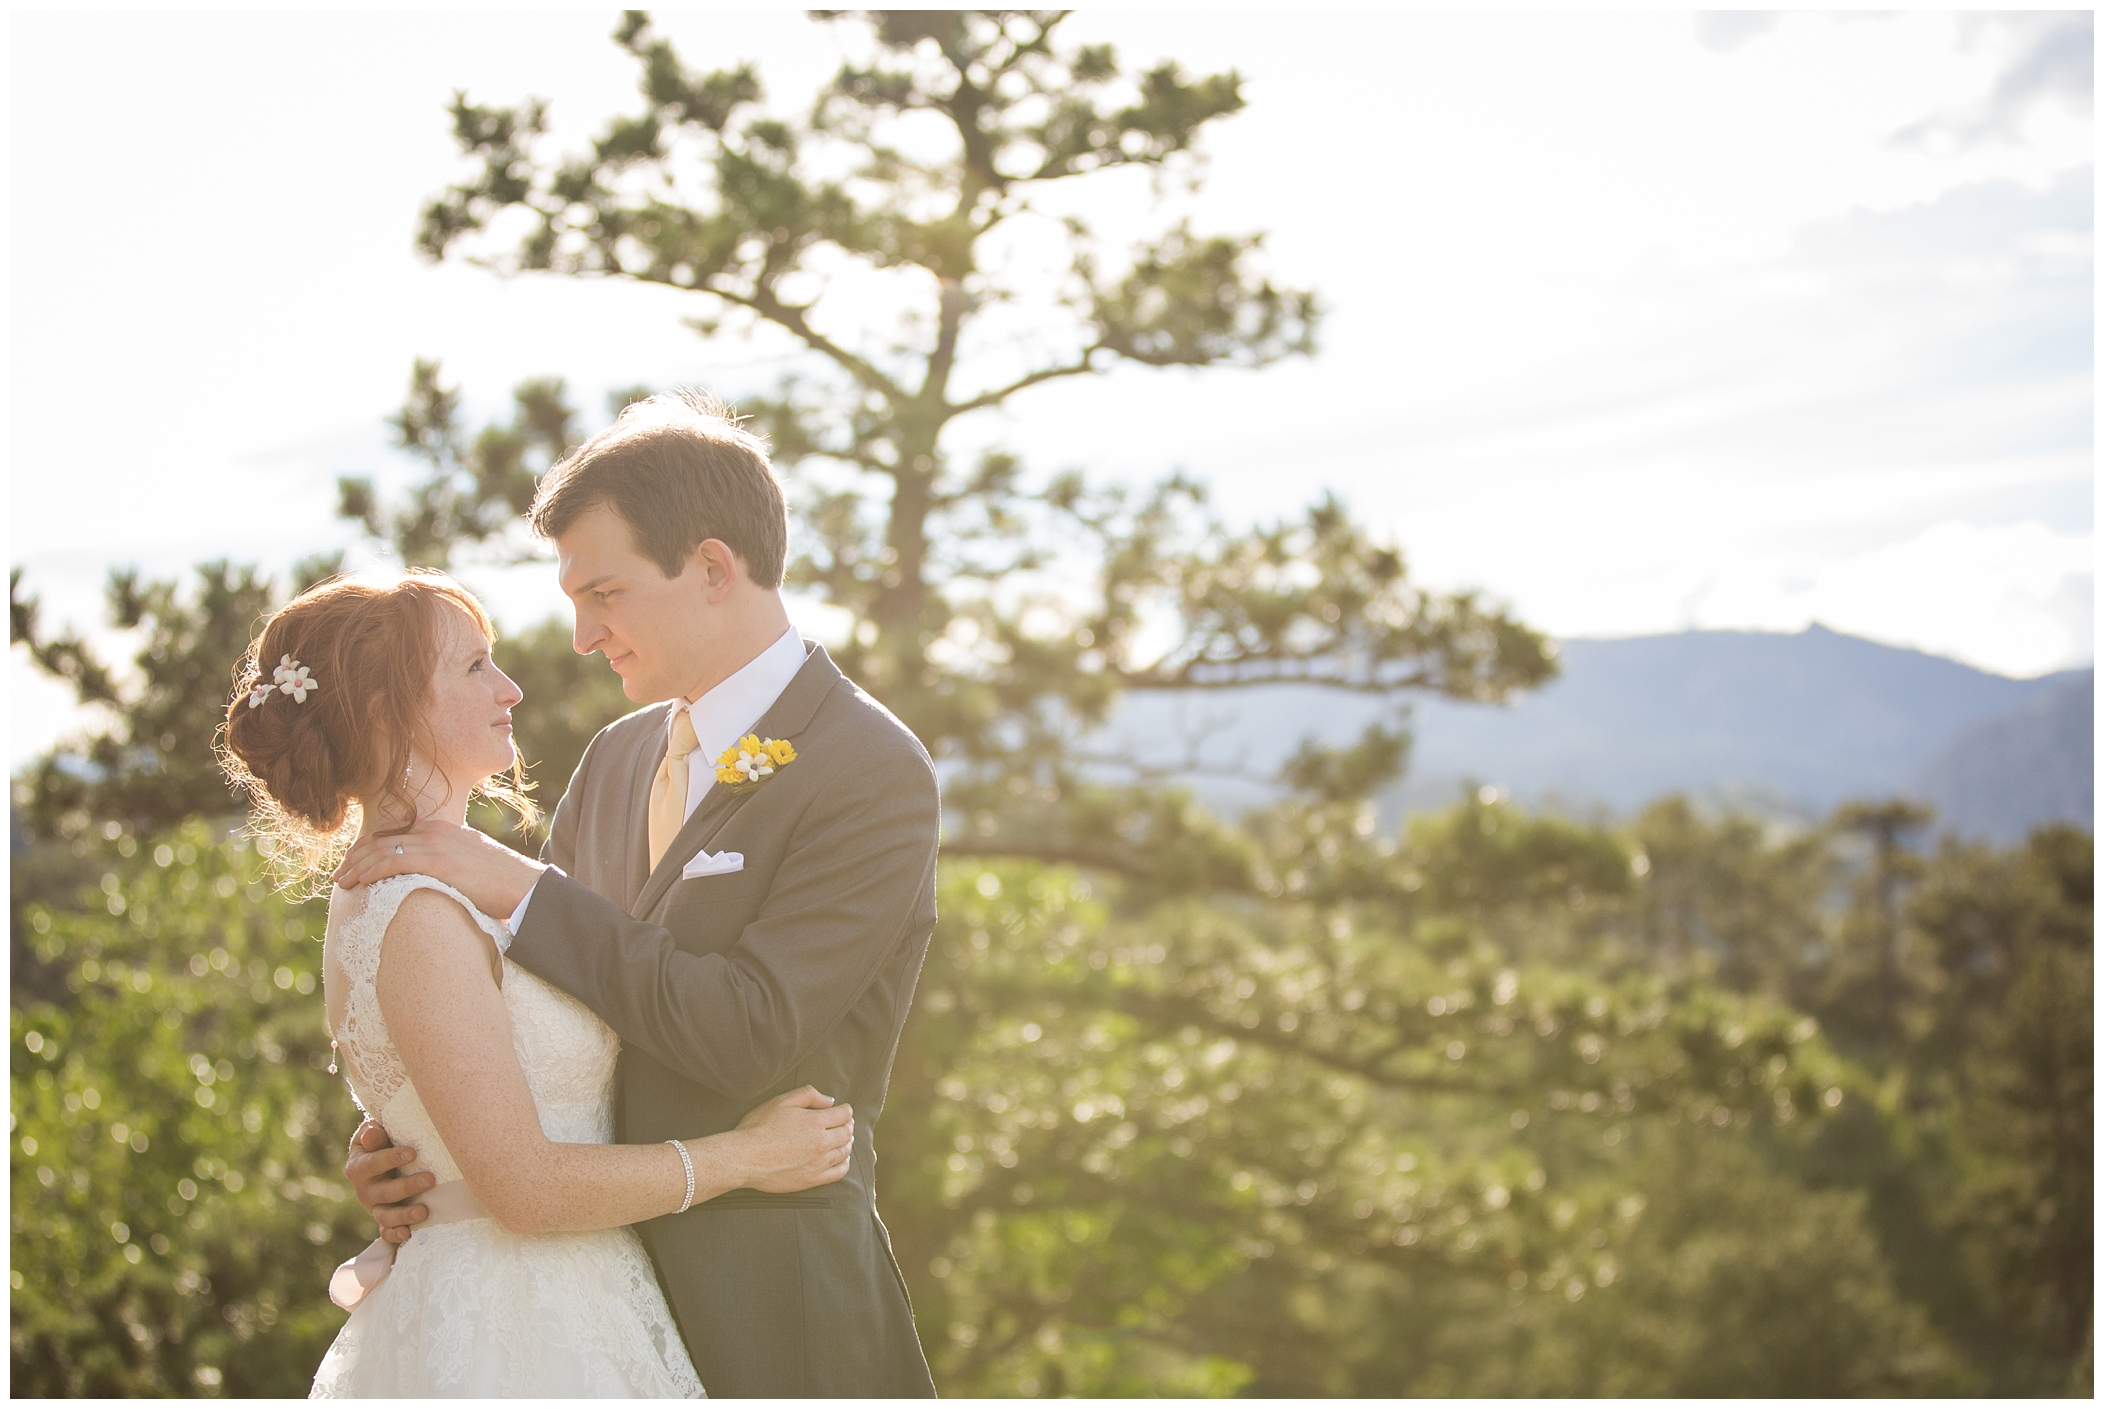 Colorado mountain wedding photos 